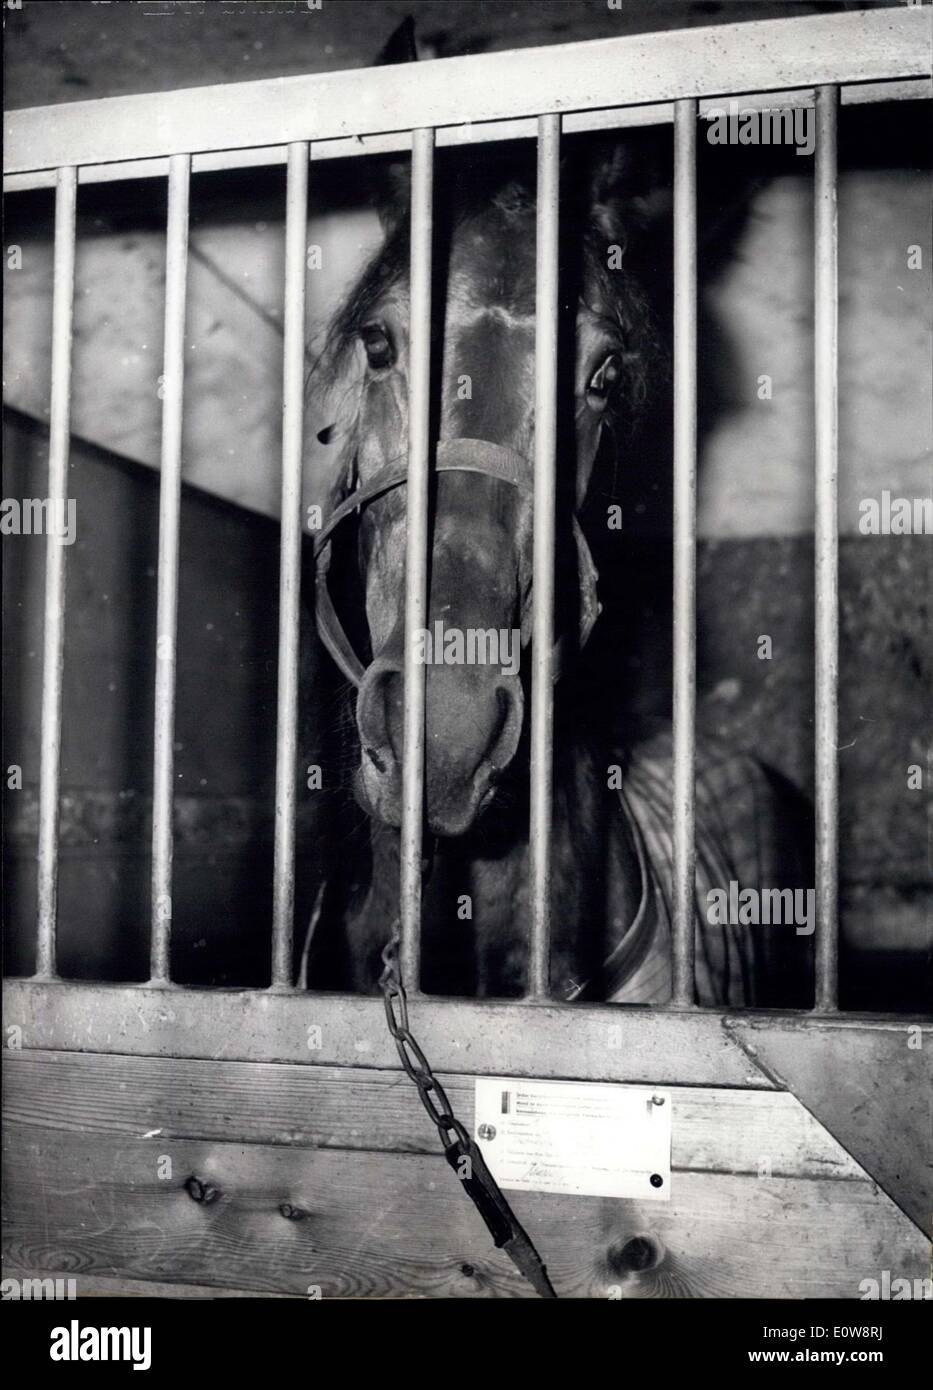 Nov. 25, 1961 - Un Sulky-cavallo arrestato a Berlino: Nel weekend a sette anni Sulky- cavallo era stato arrestato il trotto-gara a Berlino Ovest,. Questo Sulky cavallo era arrivato a Berlino Ovest con le carte del cavallo ''Marrie H.'' e vinto in due volte. I funzionari del trotto-gara erano sospette e un elenco speciale da Monaco di Baviera ha identificato questo cavallo come sulky-cavallo ''Olga'' Il cavallo è stato realizzato utilizzato per un big bet-frud. La foto mostra il triste sulky-cavallo ''Olga'' che viene arrestato nella sua casella. Di fronte al mandato di arresto ufficiale-ordine. Foto Stock